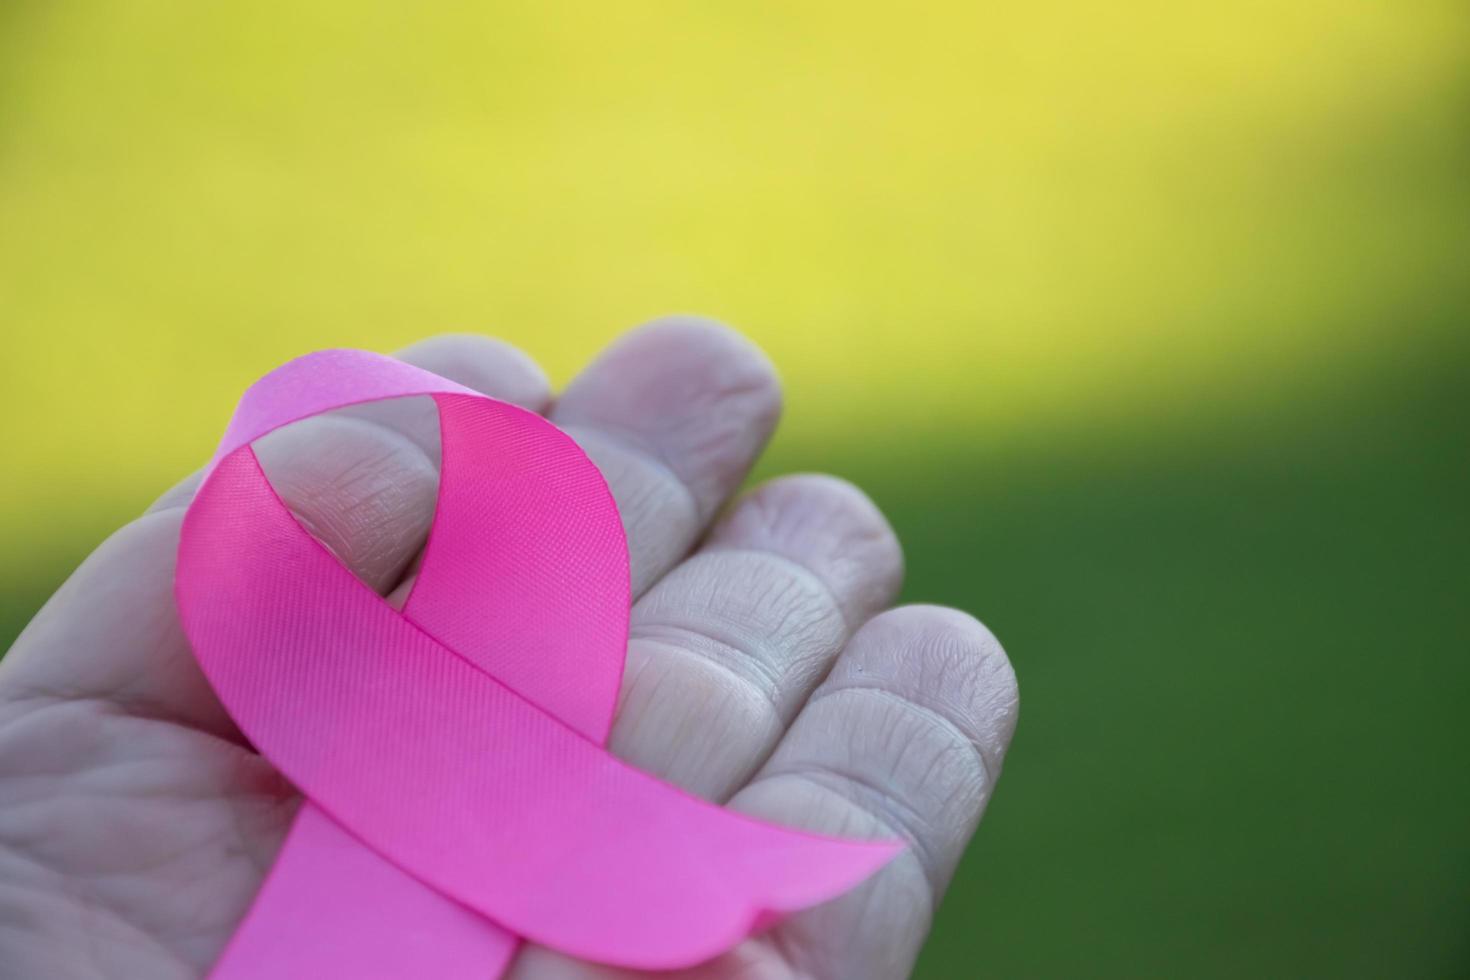 fita de papel rosa segurando nas mãos de uma adolescente para mostrar e chamar todas as pessoas ao redor do mundo para apoiar e participar da campanha de câncer de mama da mulher, foco suave e seletivo. foto